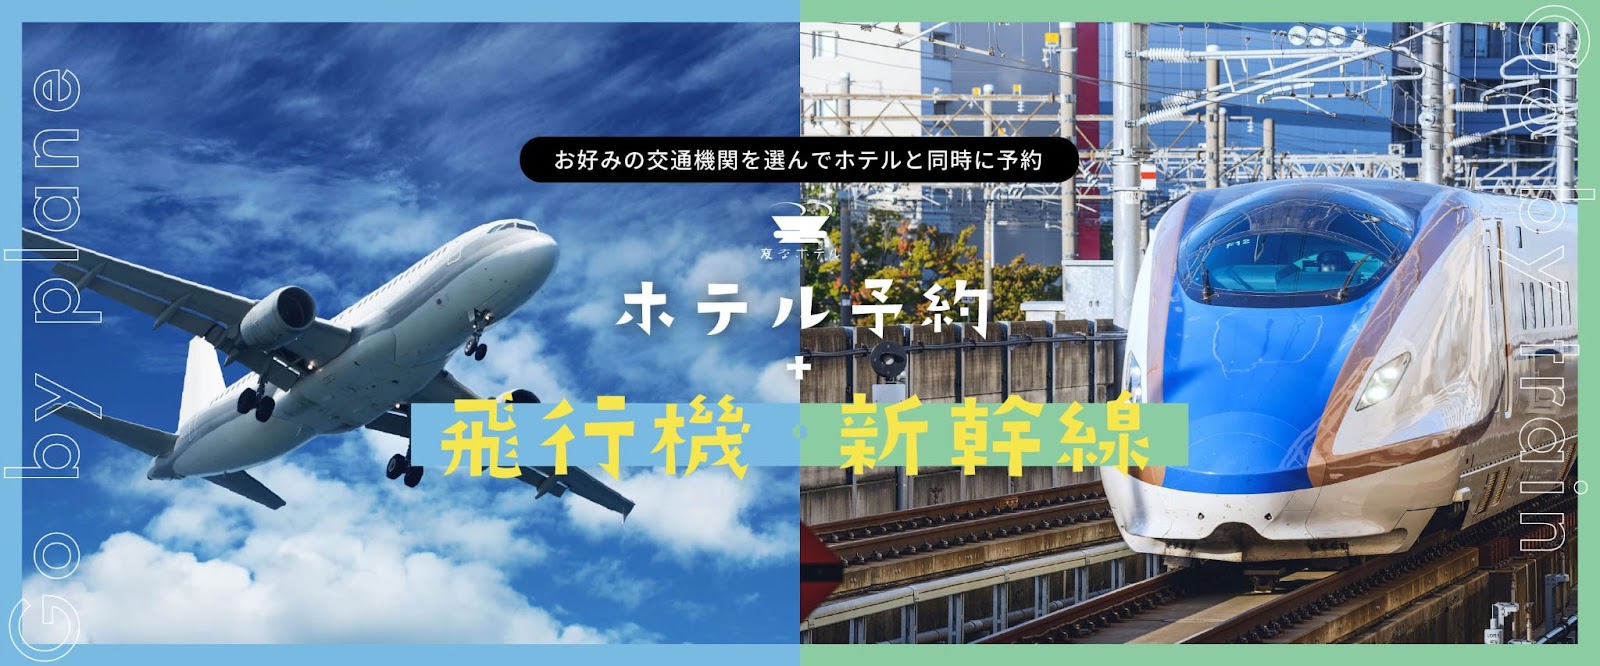 ★公式サイトから「宿泊」と「新幹線などのJR乗車券」を同時に予約できるようになりました！★